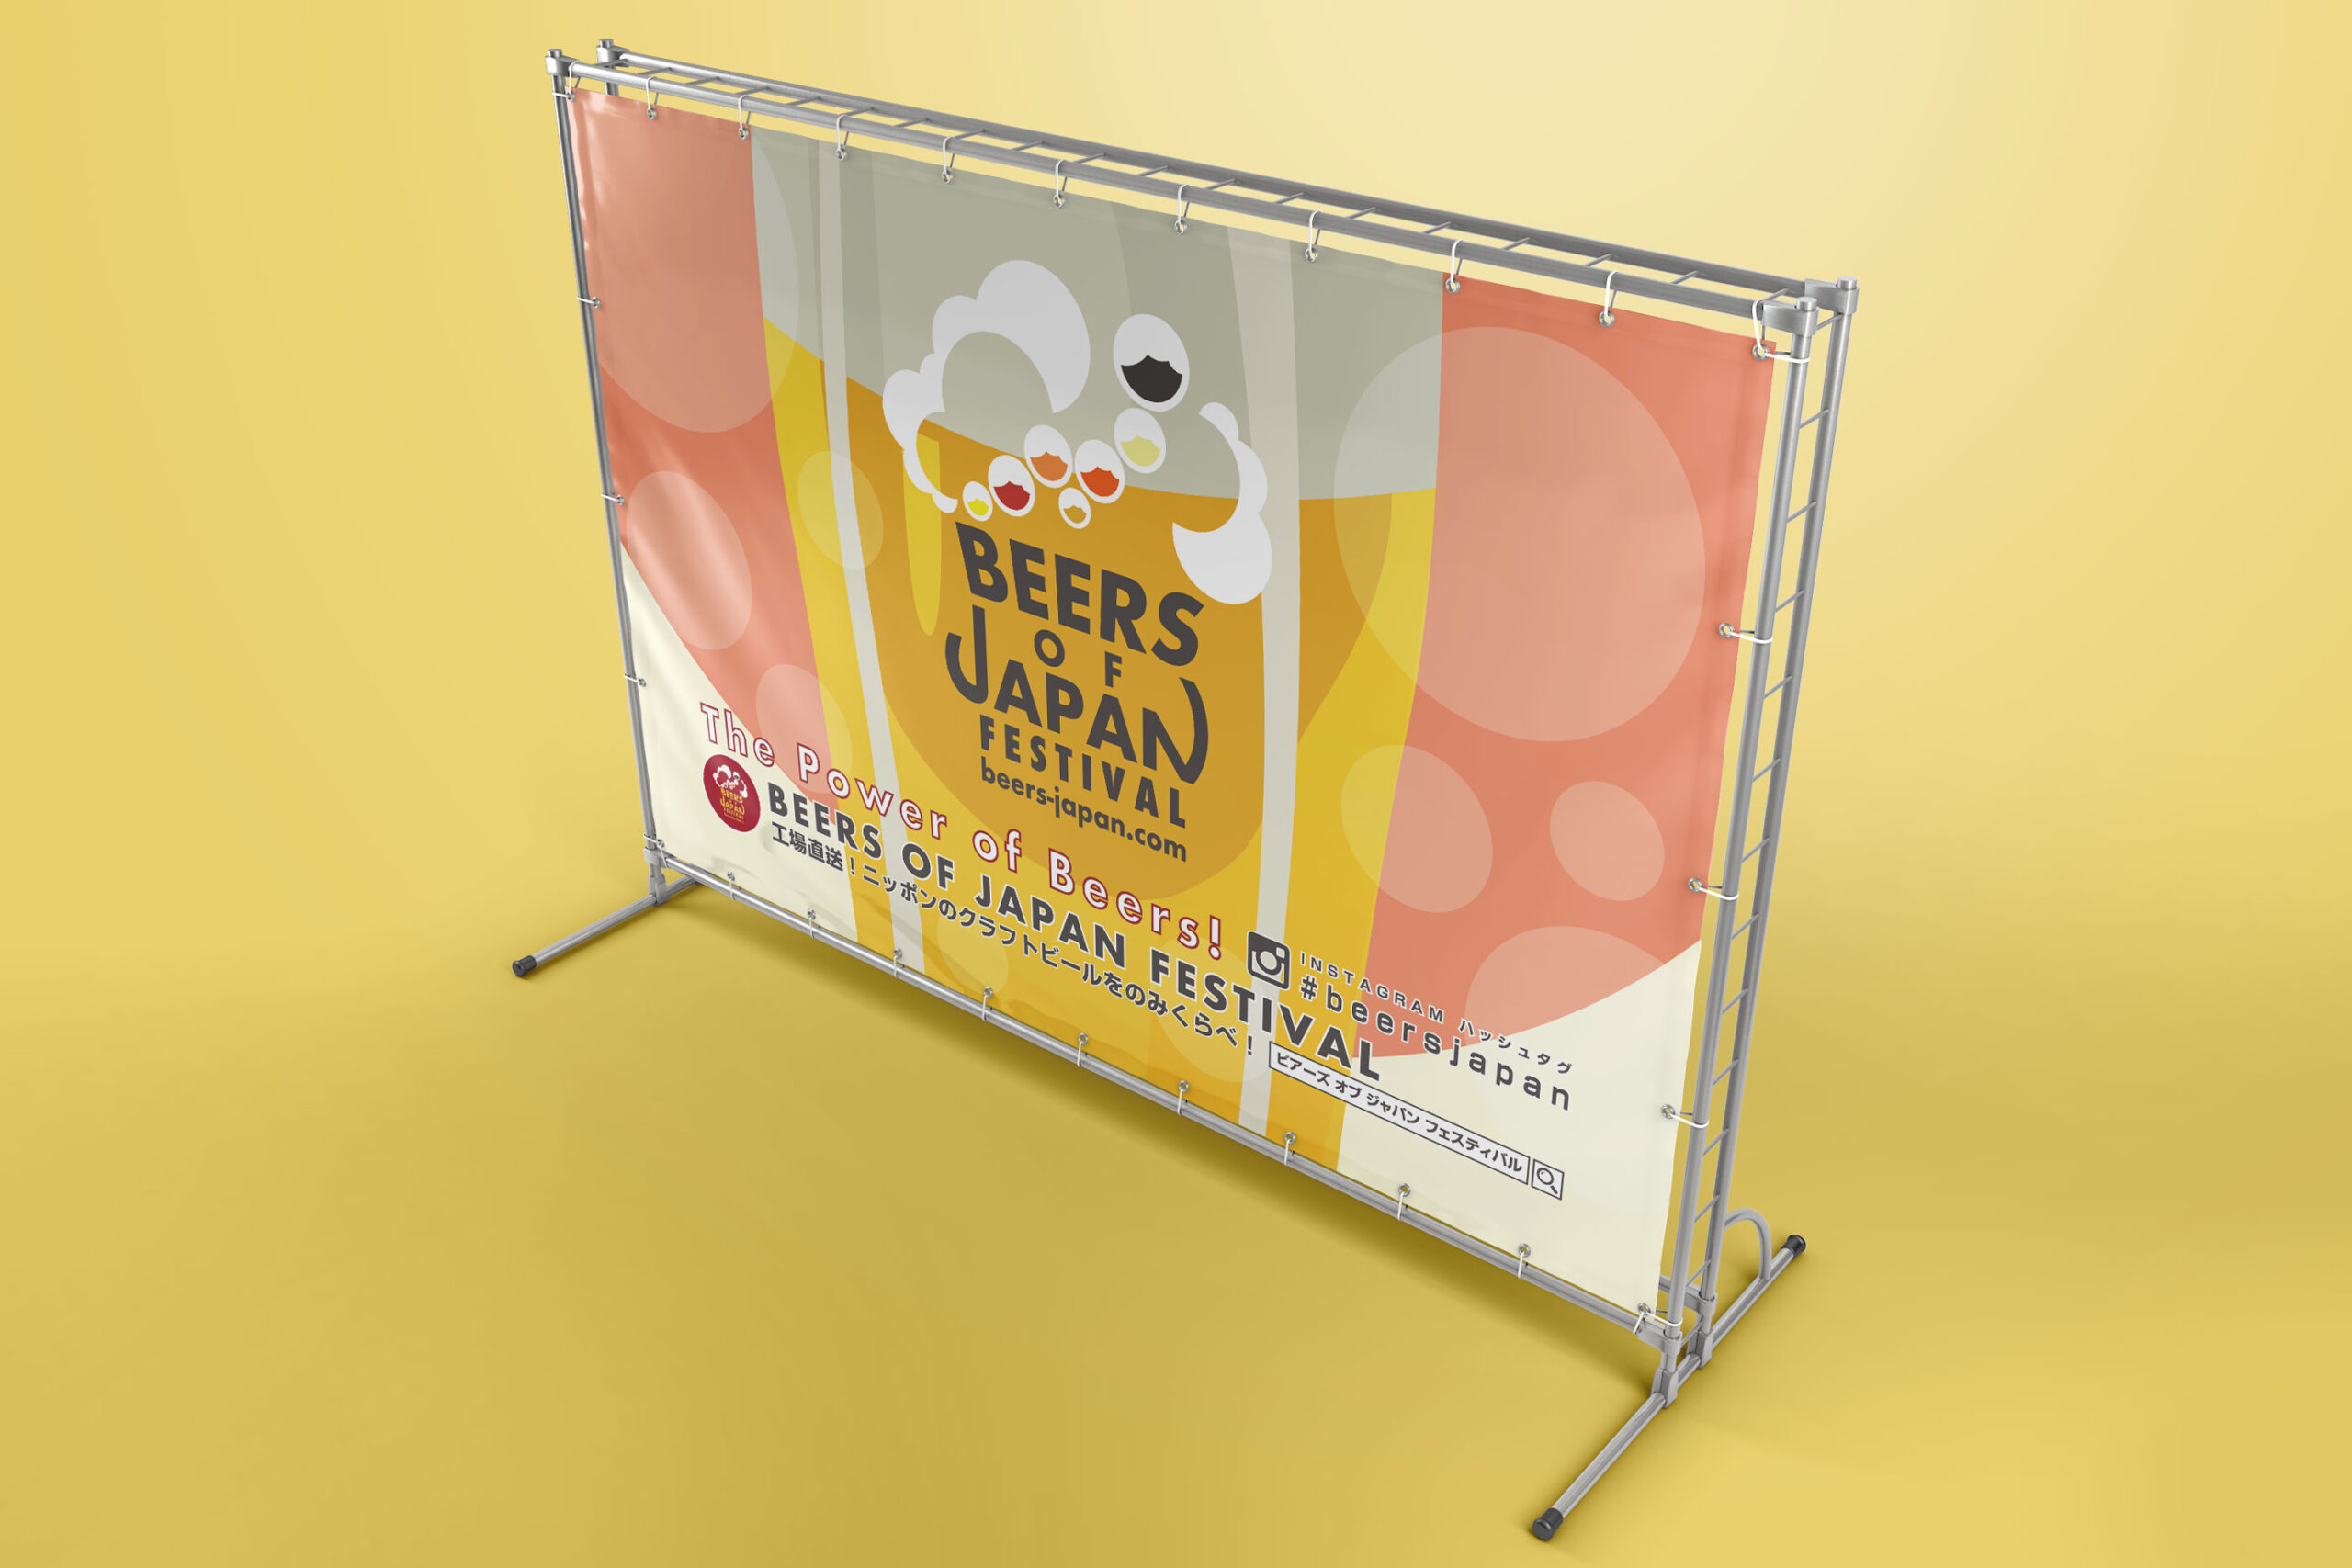 ビアーズオブジャパンフェスティバルのイベント内容をデザインしたトラス組の大型ターポリン看板のグラフィックモック